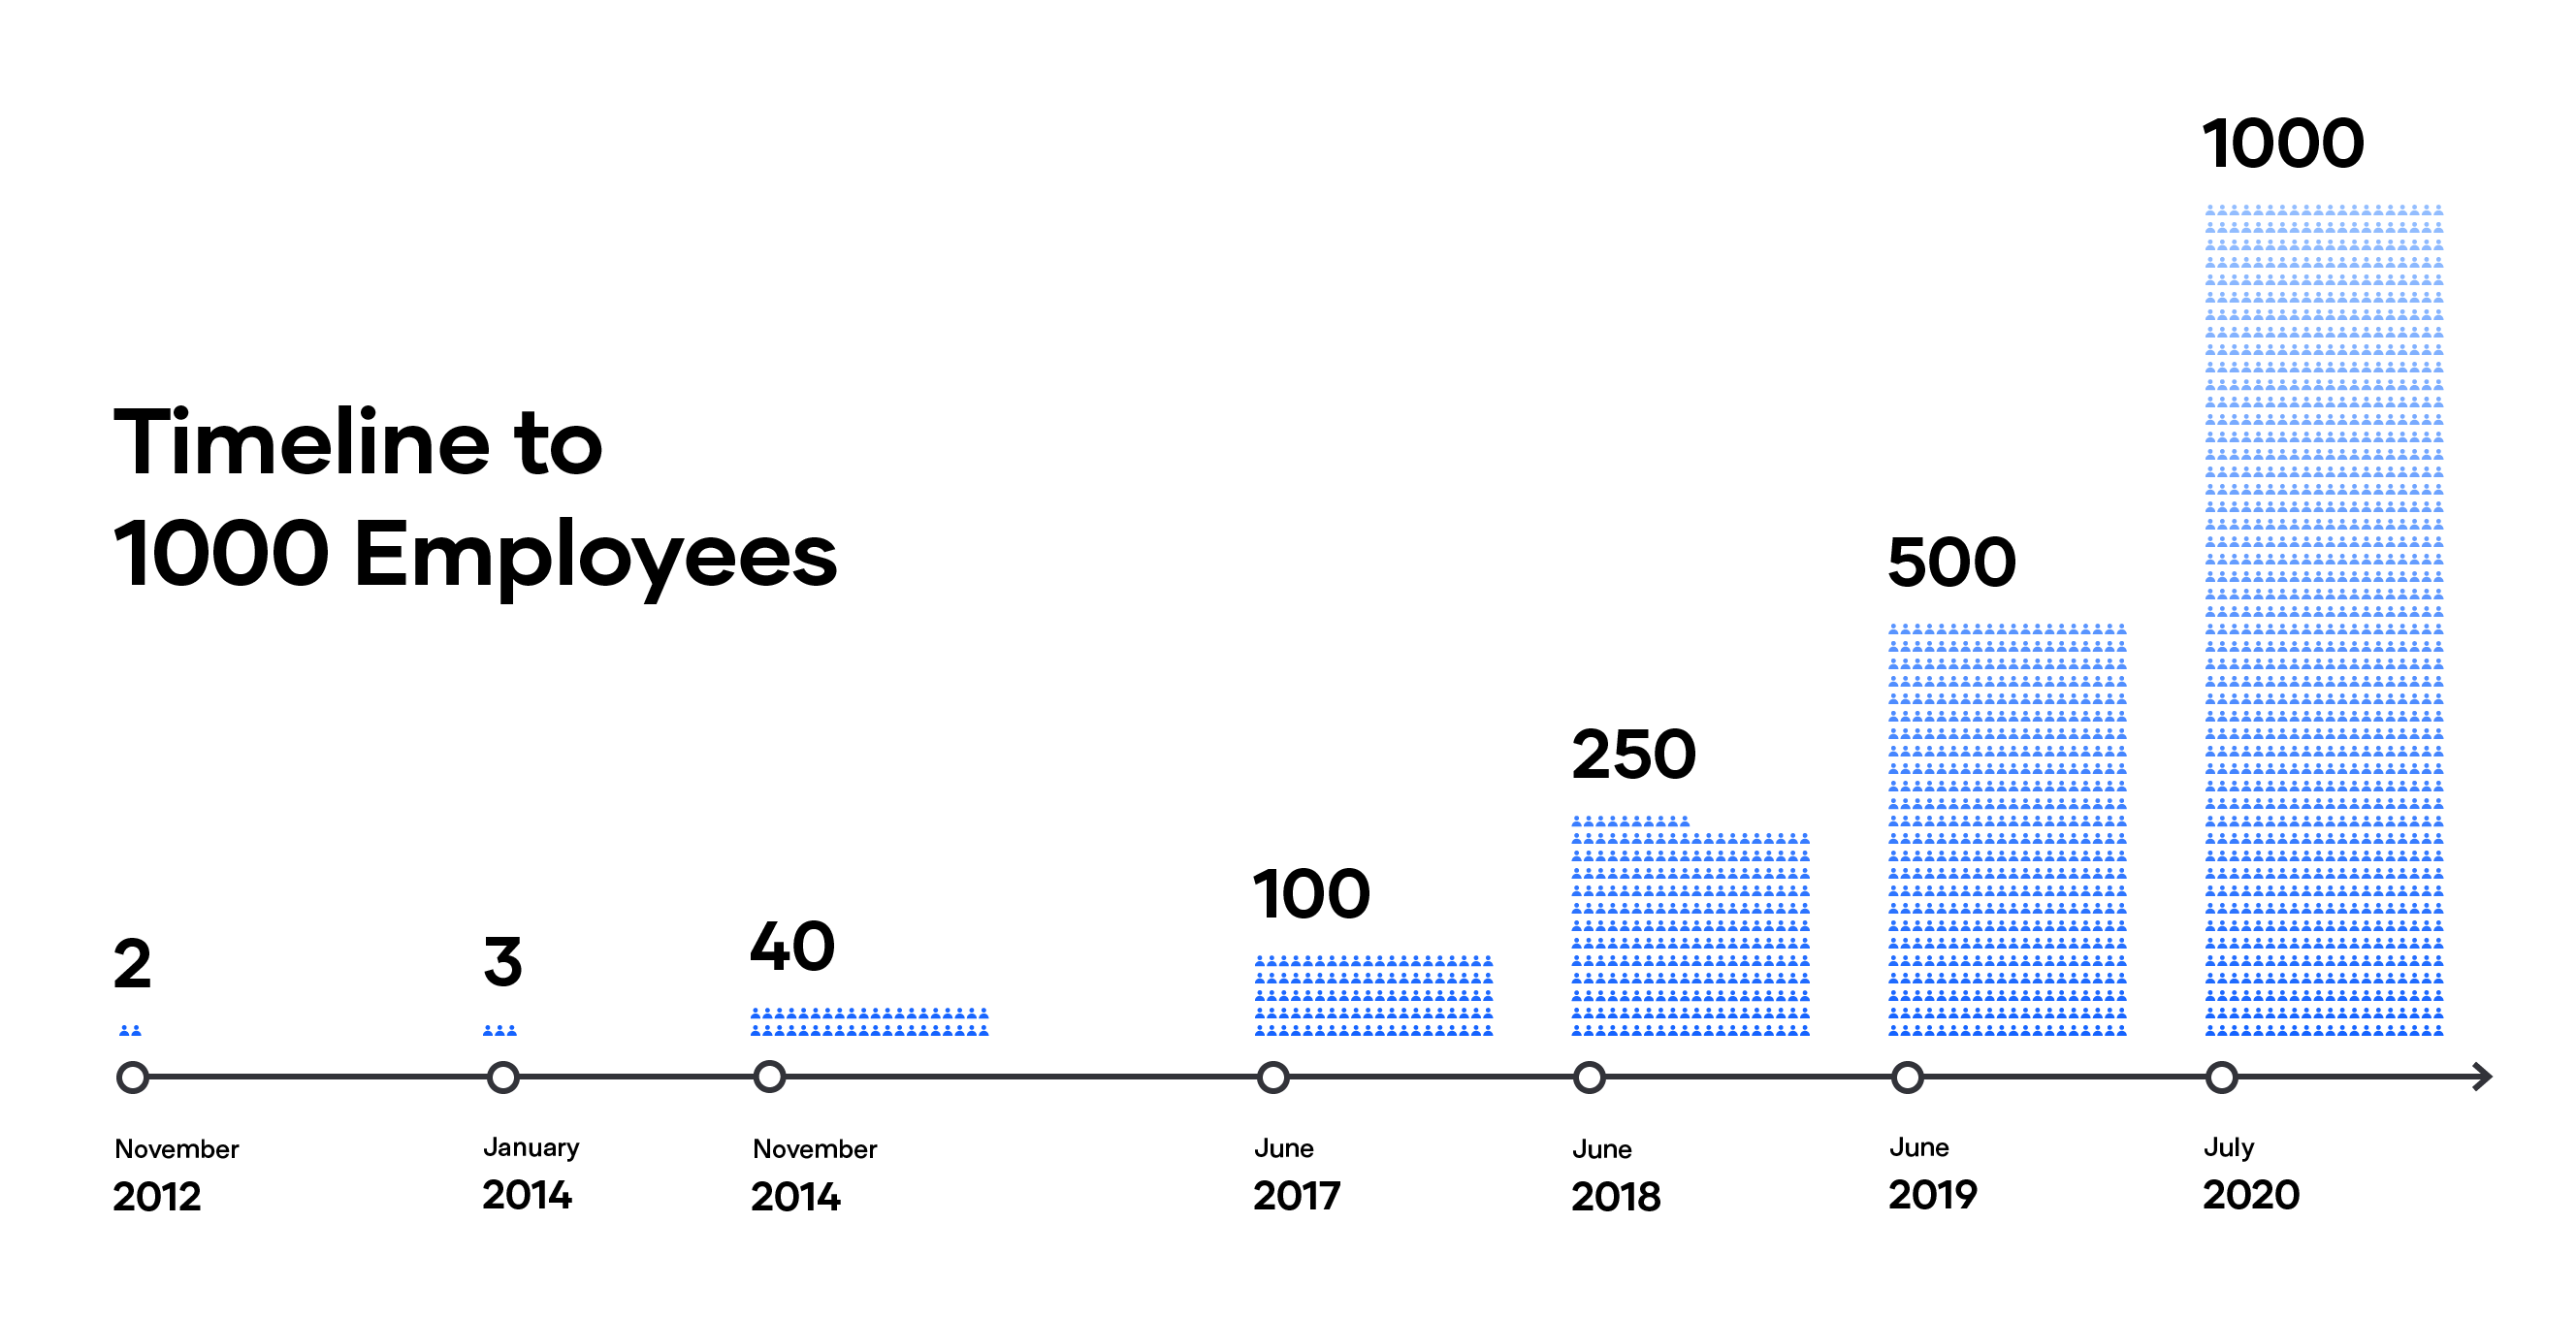 Timeline of HashiCorp employee headcount growth 